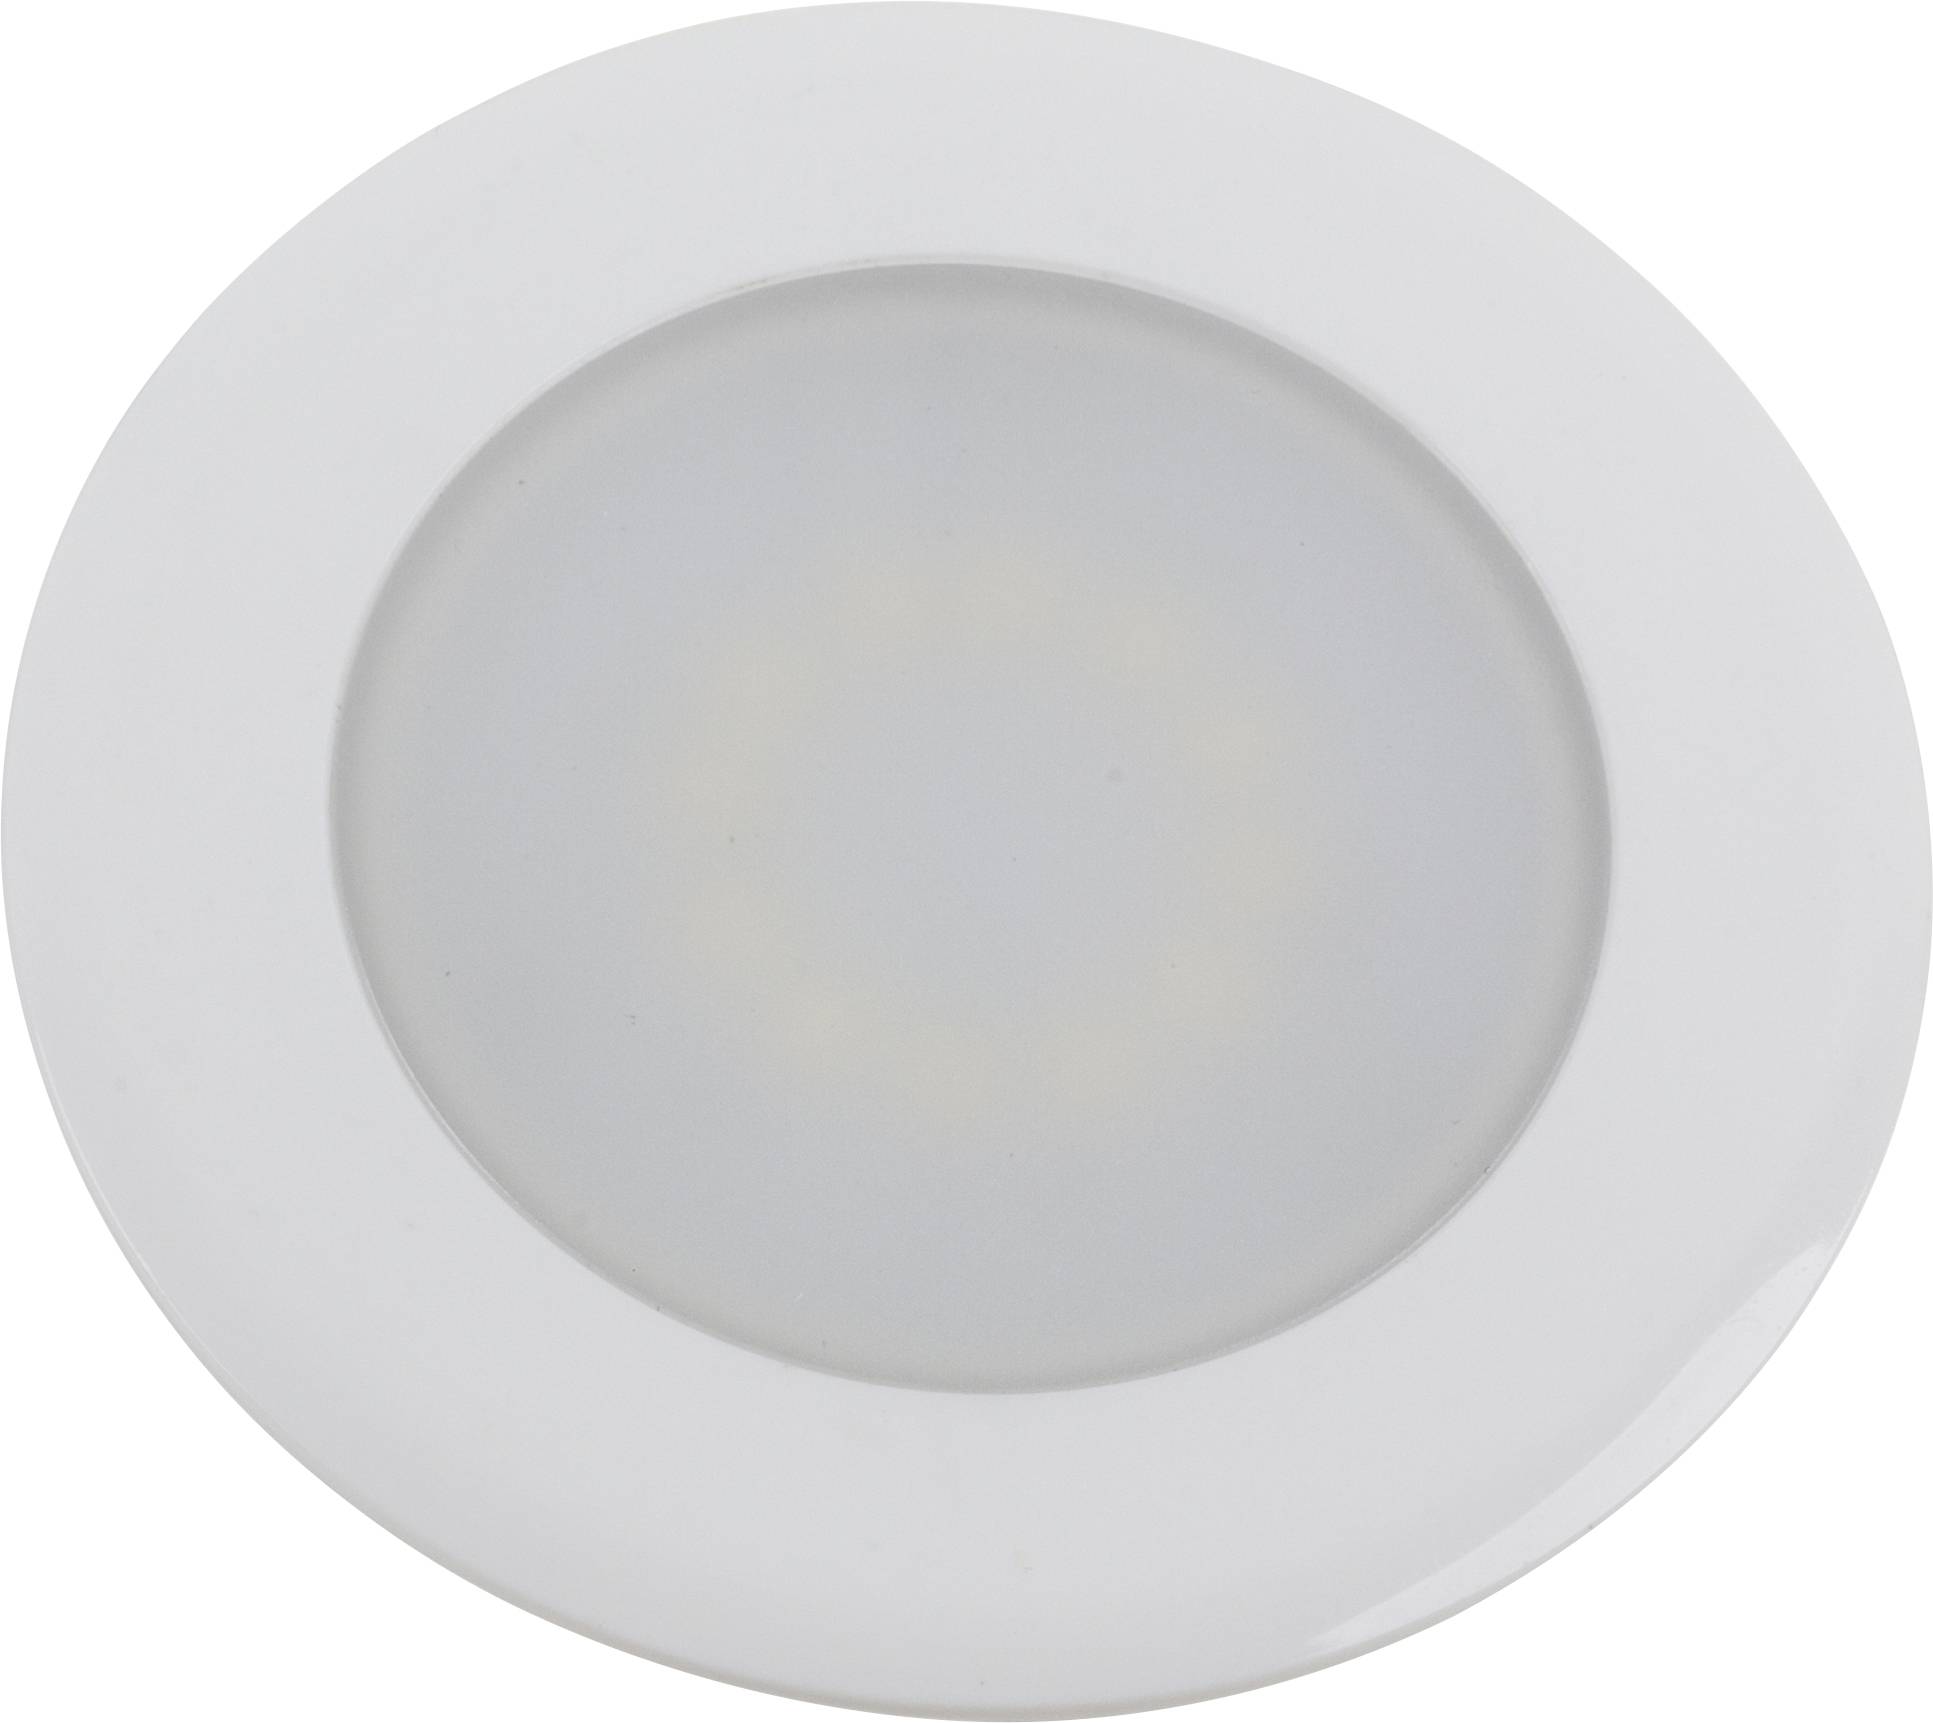 HEITRONIC Casablanca 500034 LED-Einbauleuchte 2 W Weiß